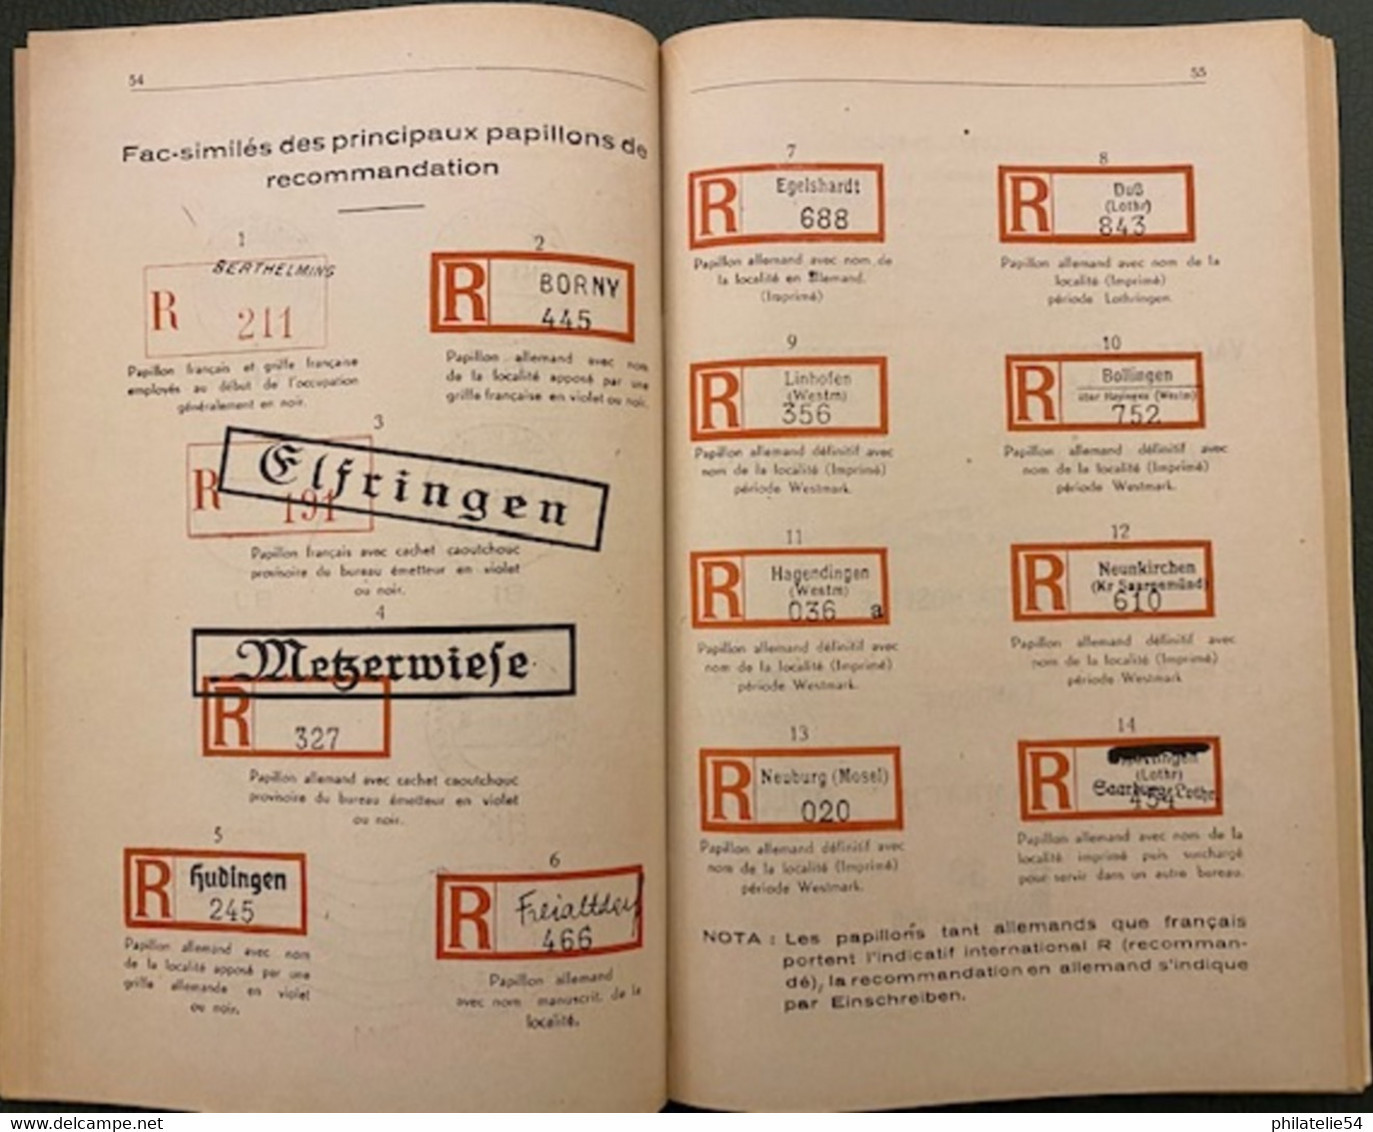 Les Cachets Postaux De L'occupation Allemande En Moselle  1940-1944 - Livres Sur Les Collections